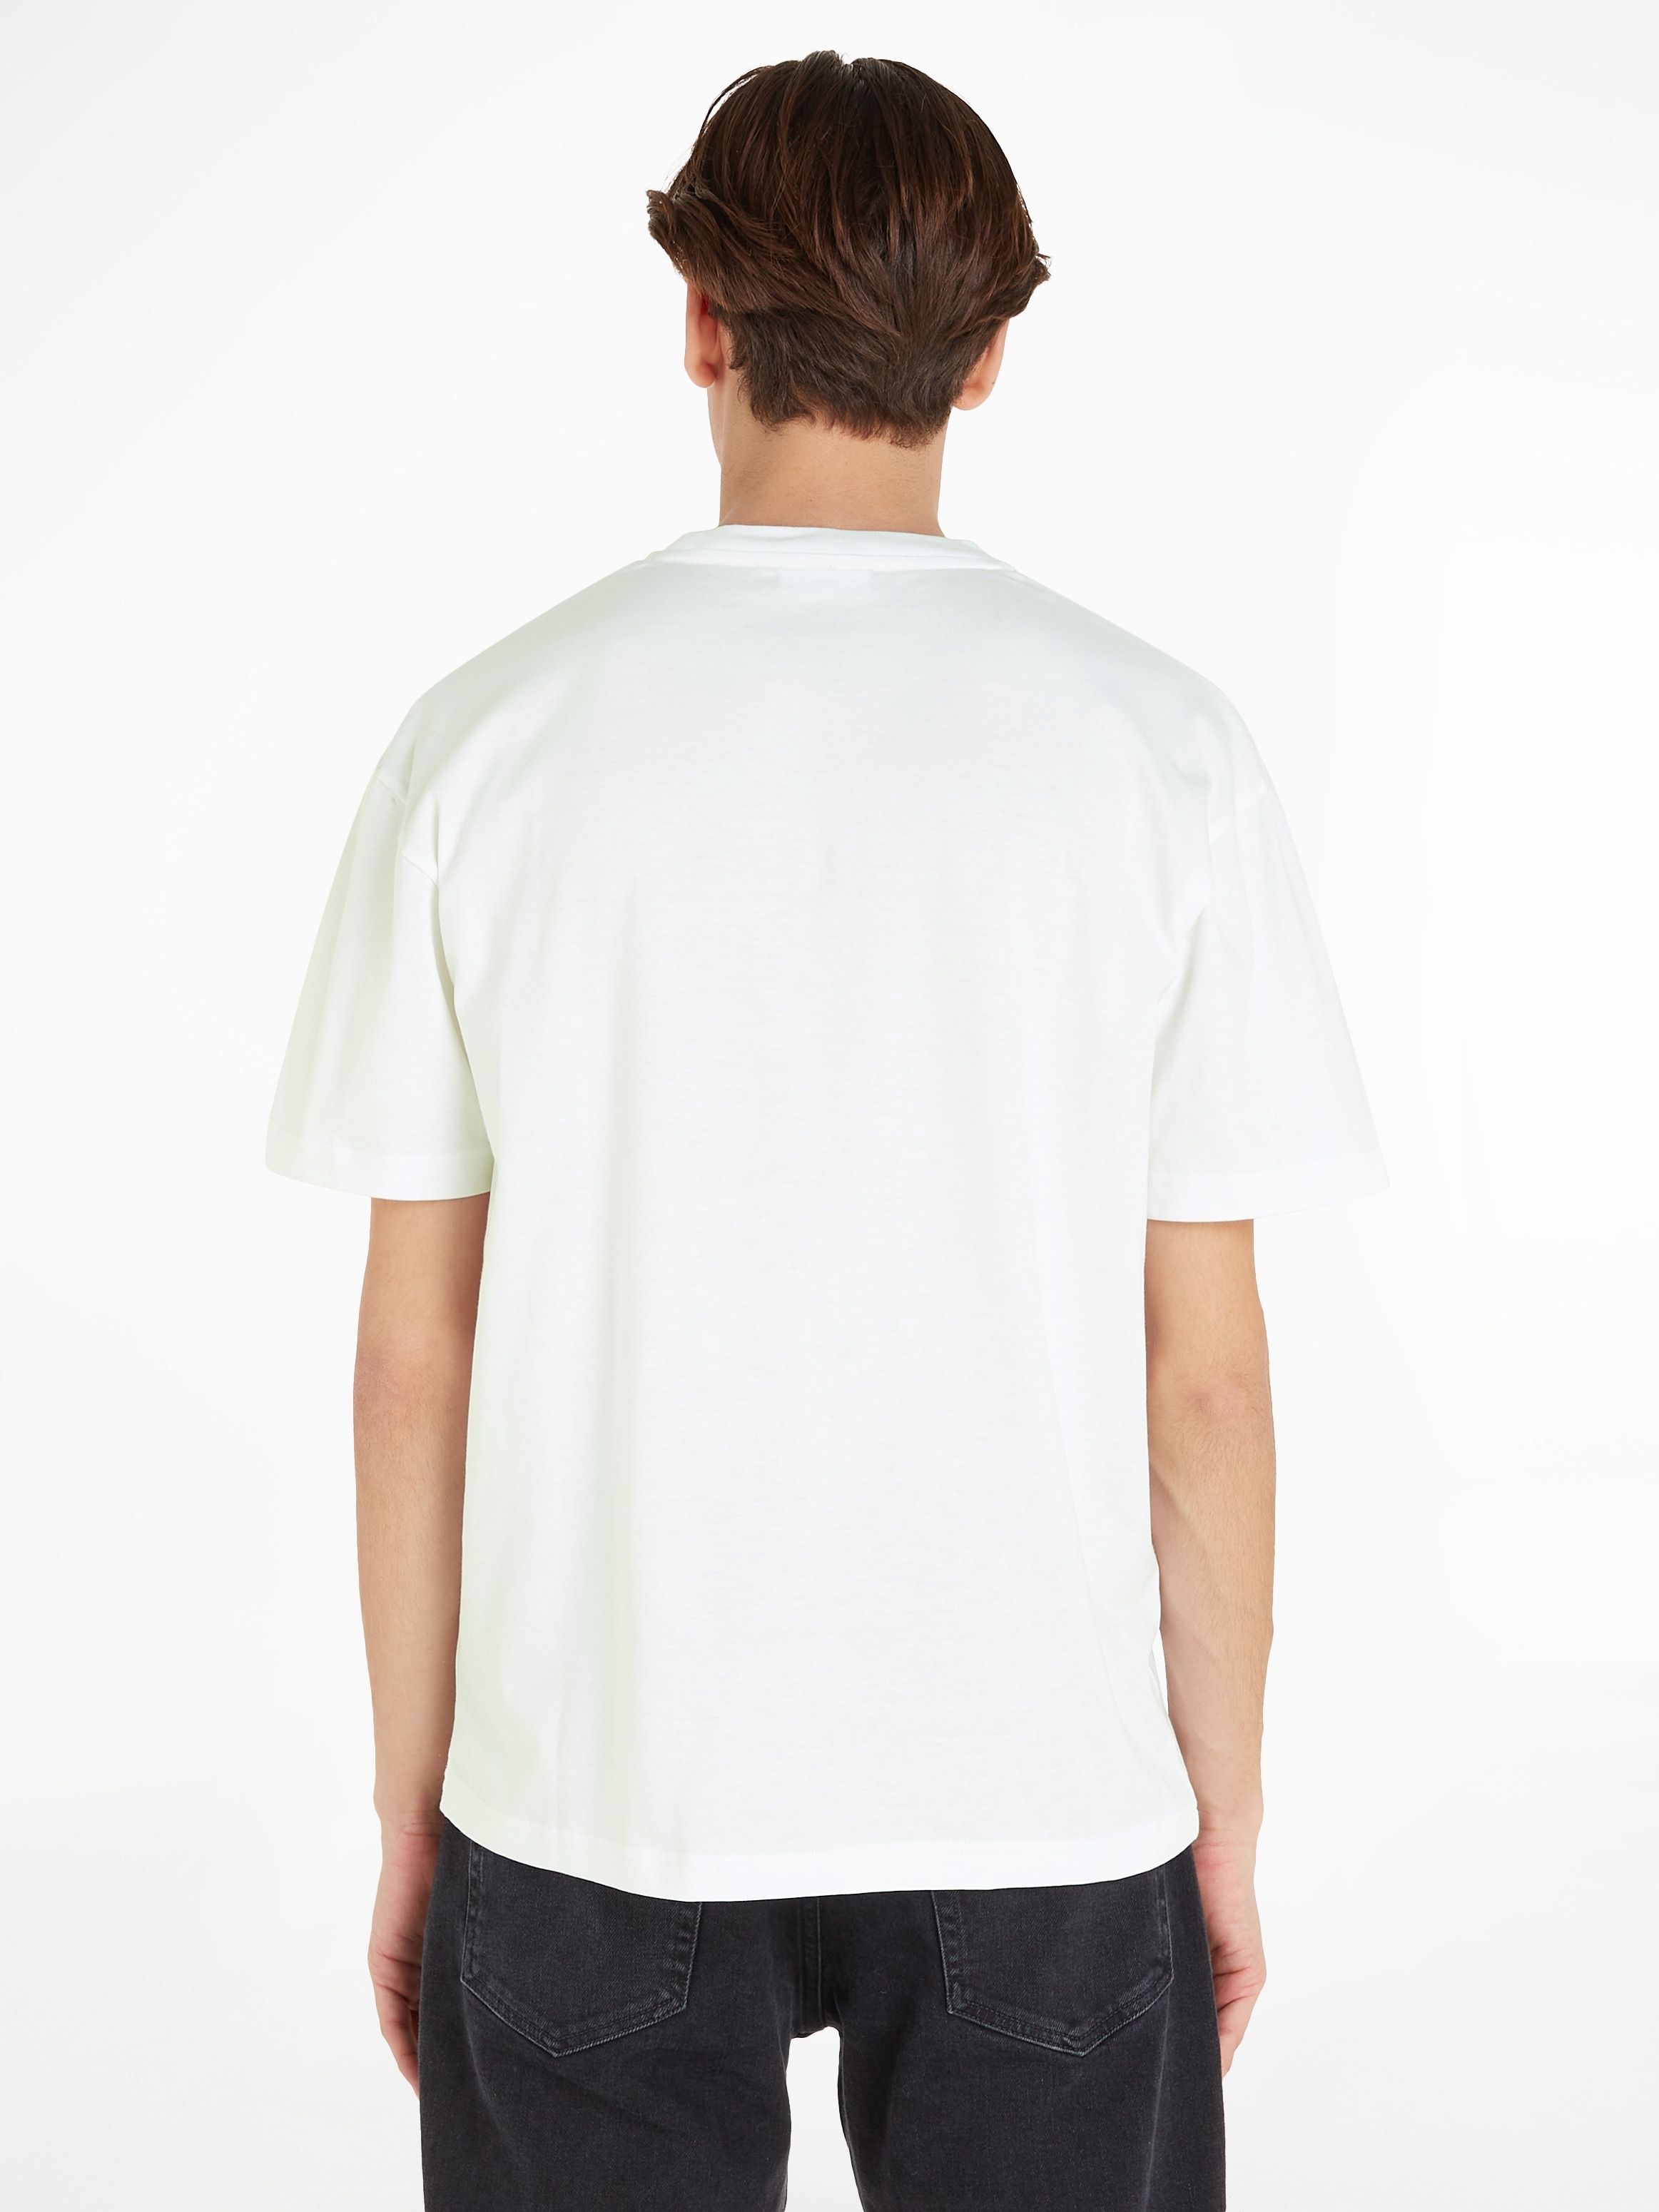 Calvin Klein T-Shirt für COMFORT | T-SHIRT« ▷ LOGO »HERO BAUR